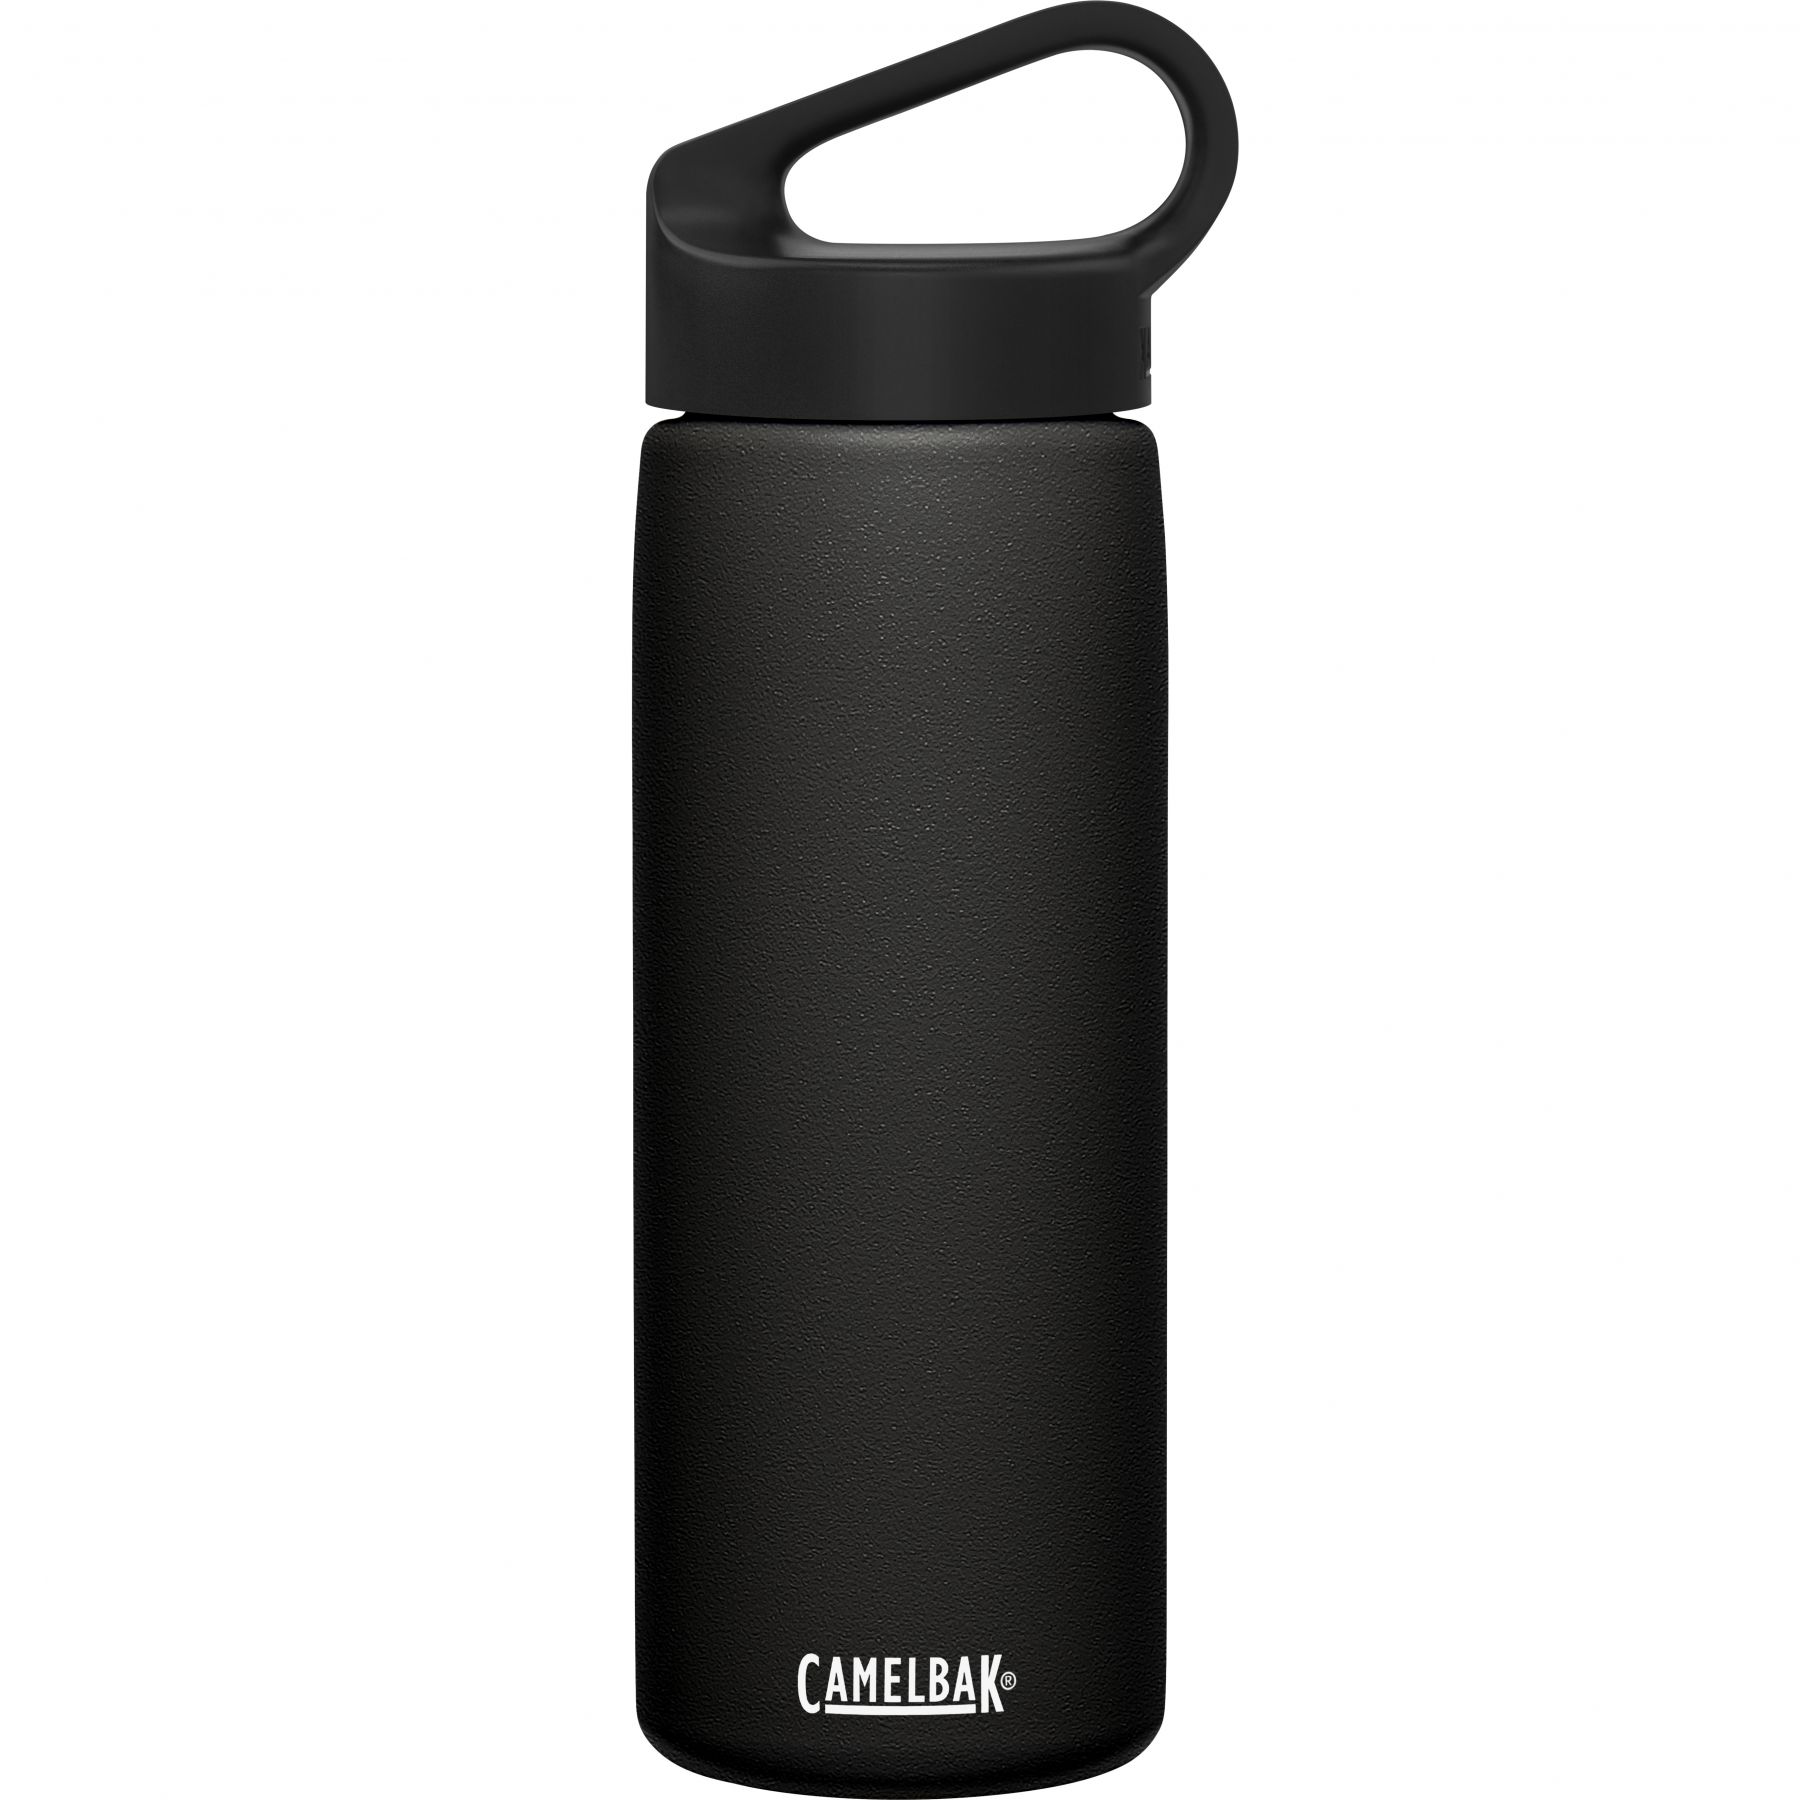 Brug CamelBak Carry Cap, drikkedunk, 0,6L, sort til en forbedret oplevelse